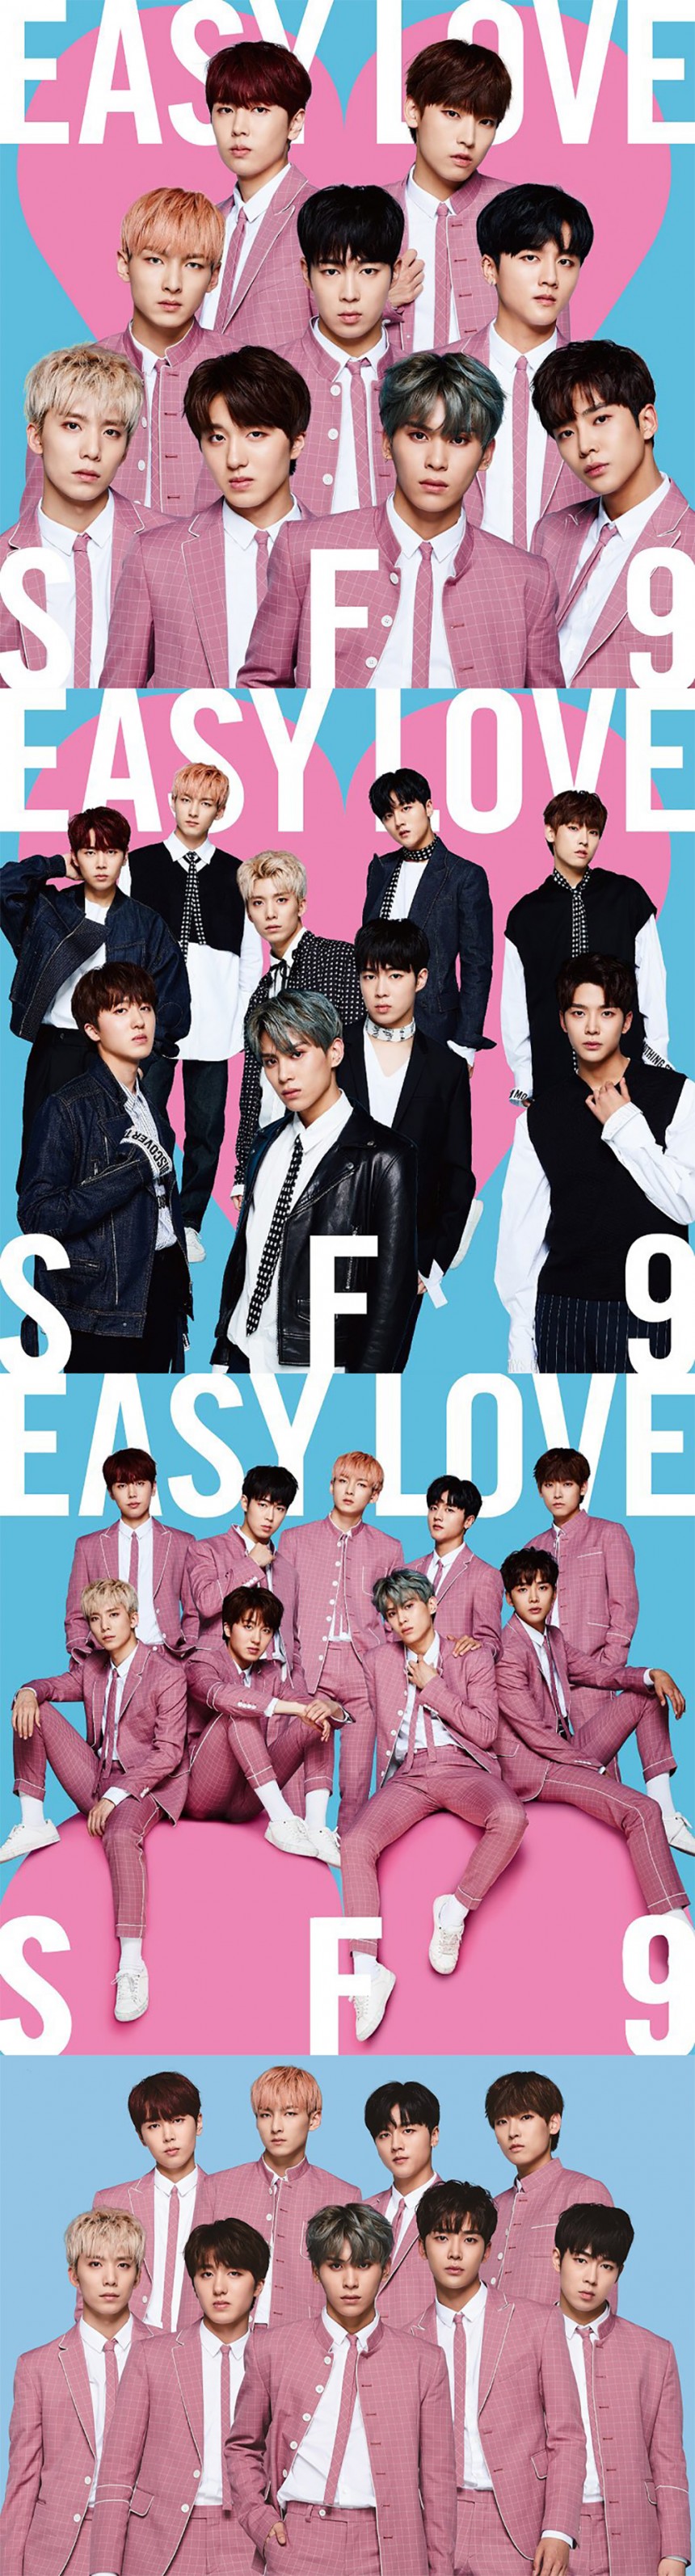 에스에프나인(SF9) 일본 싱글 ‘Easy Love’ 커버 이미지 / 에스에프나인(SF9) 공식 트위터